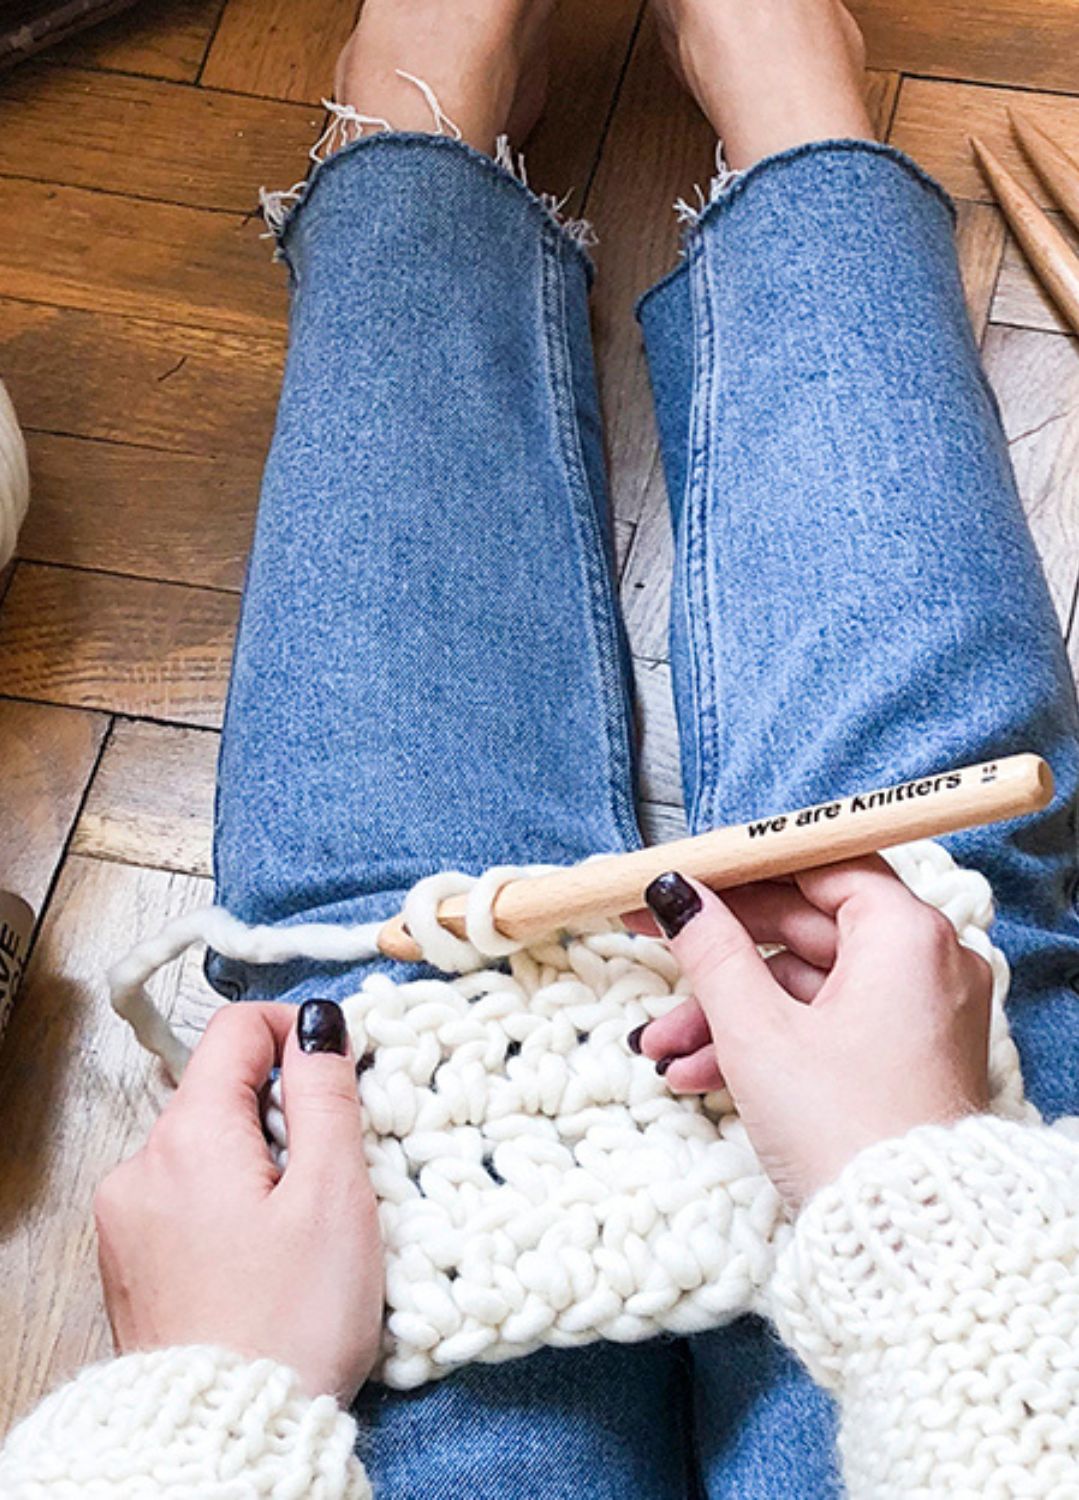 Learn the Crochet Basics